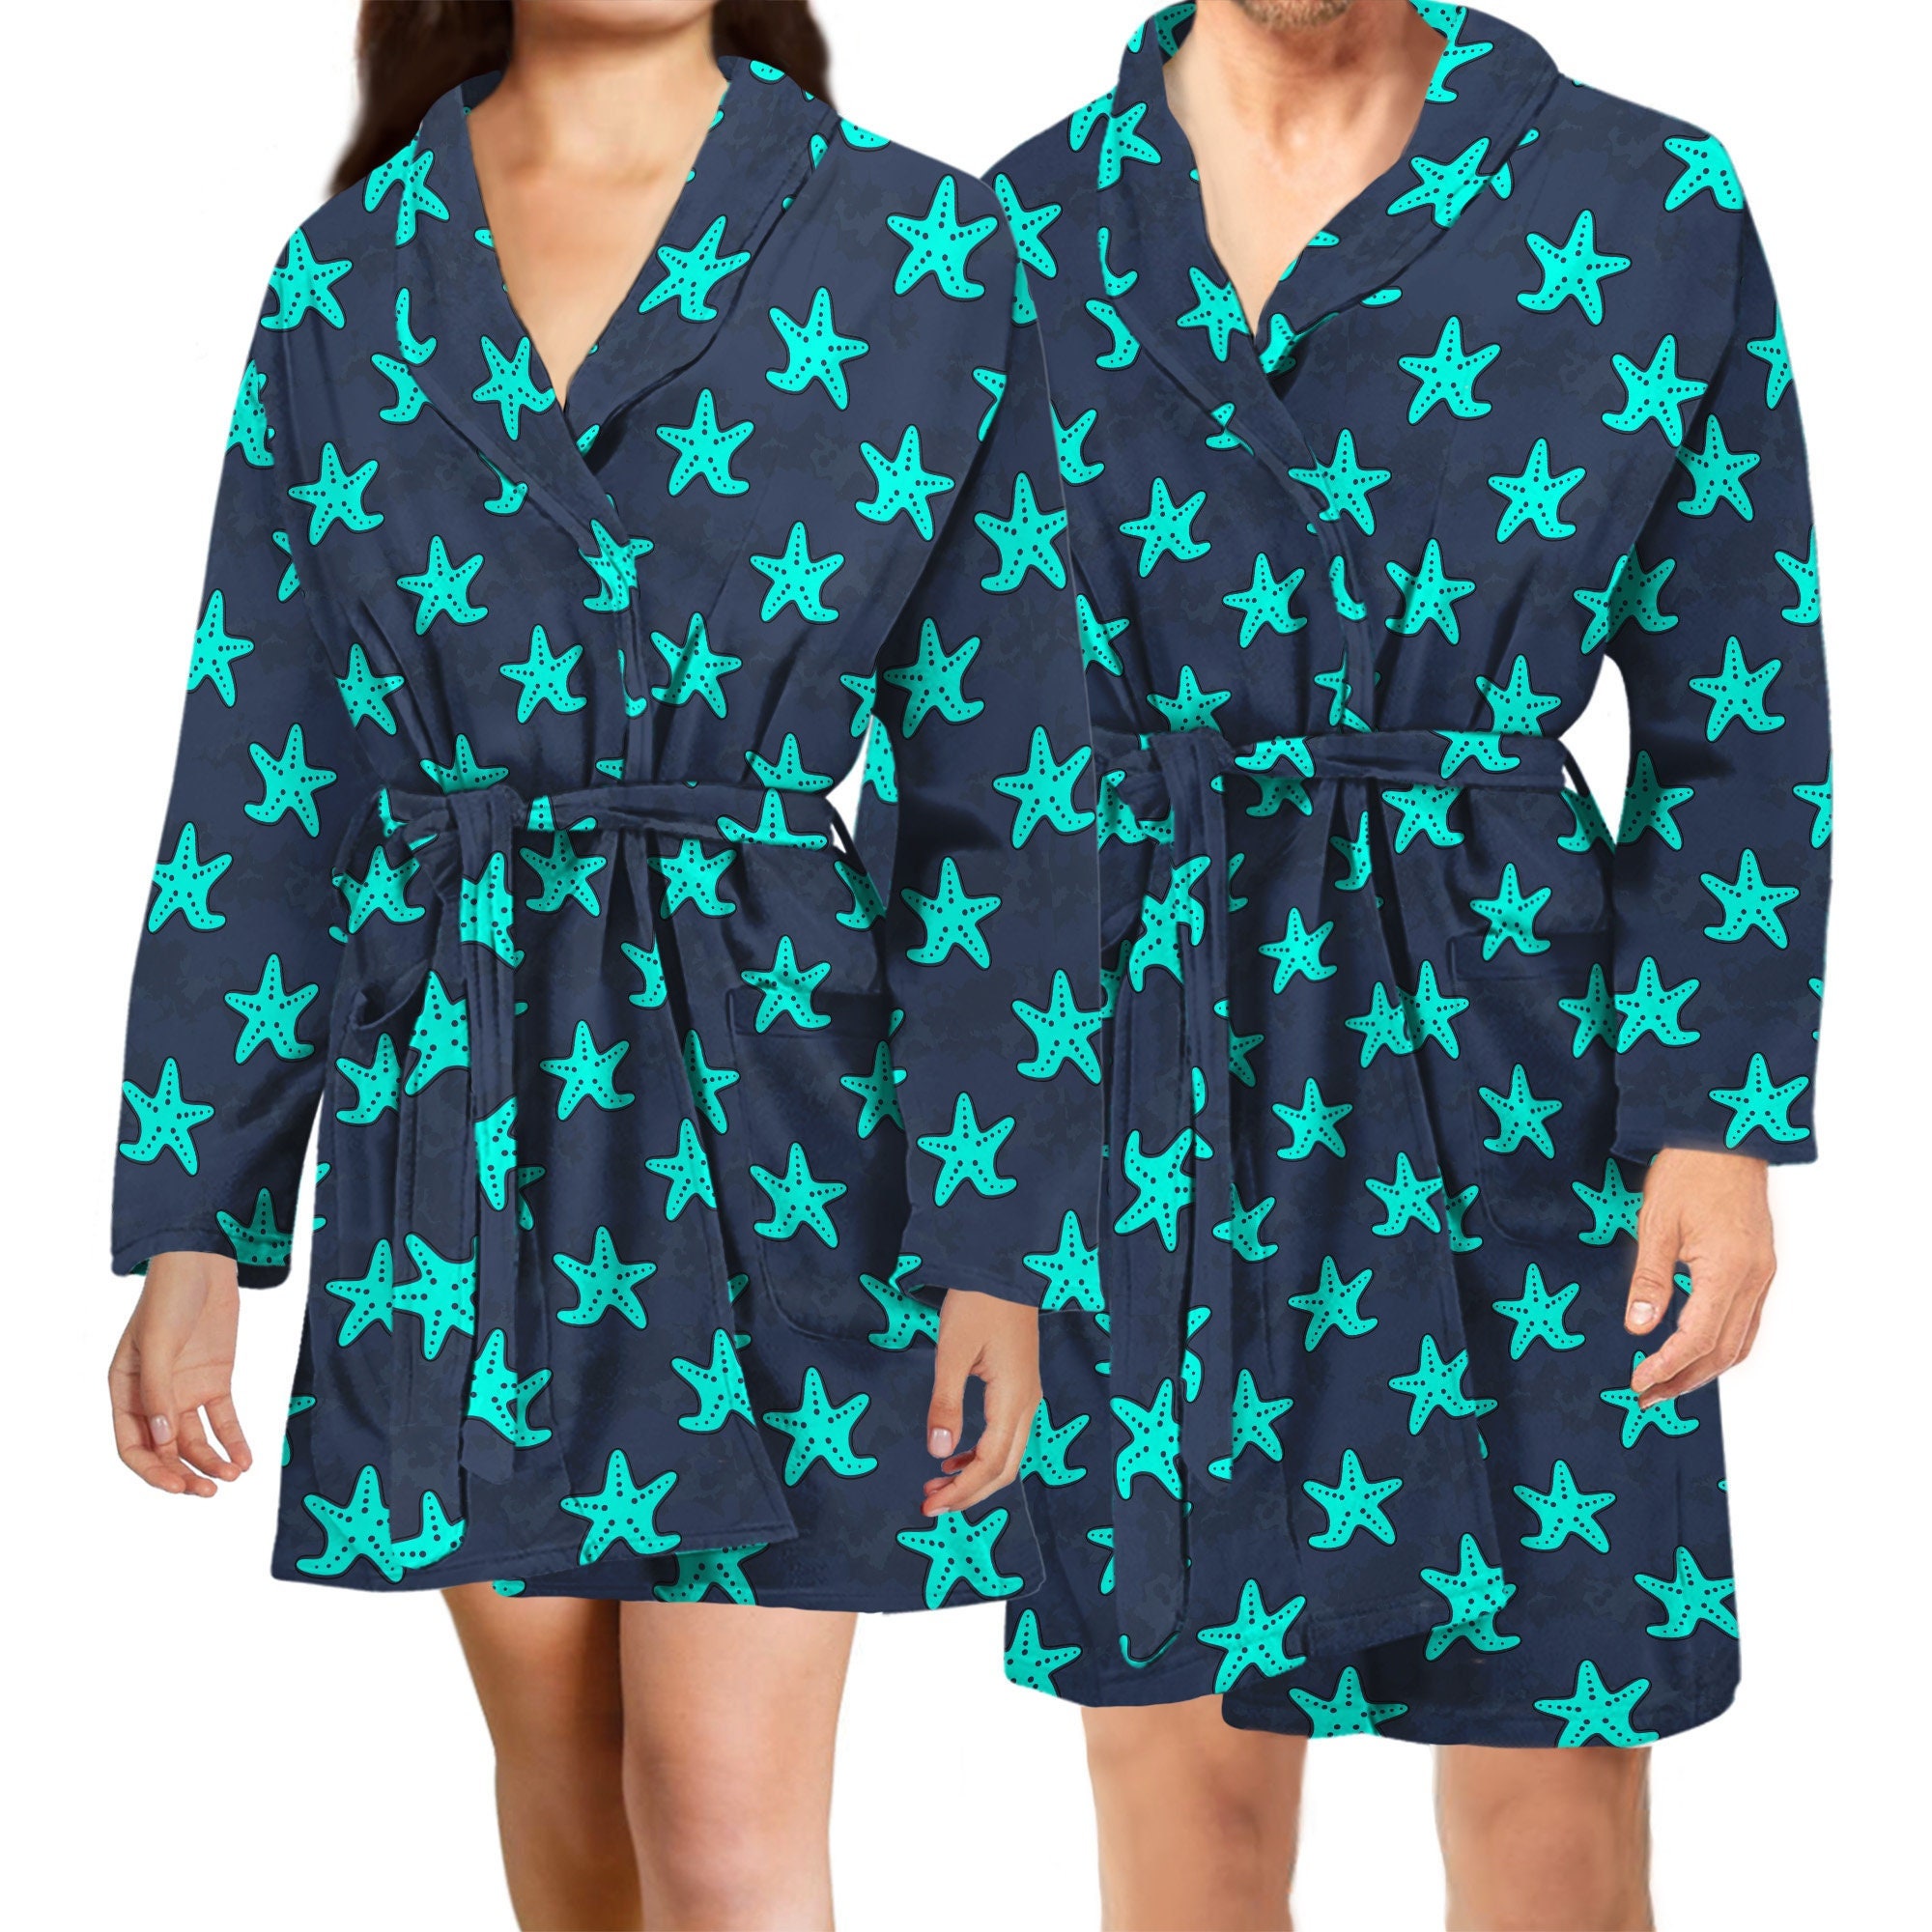 Starfish Pyjamas For Men L